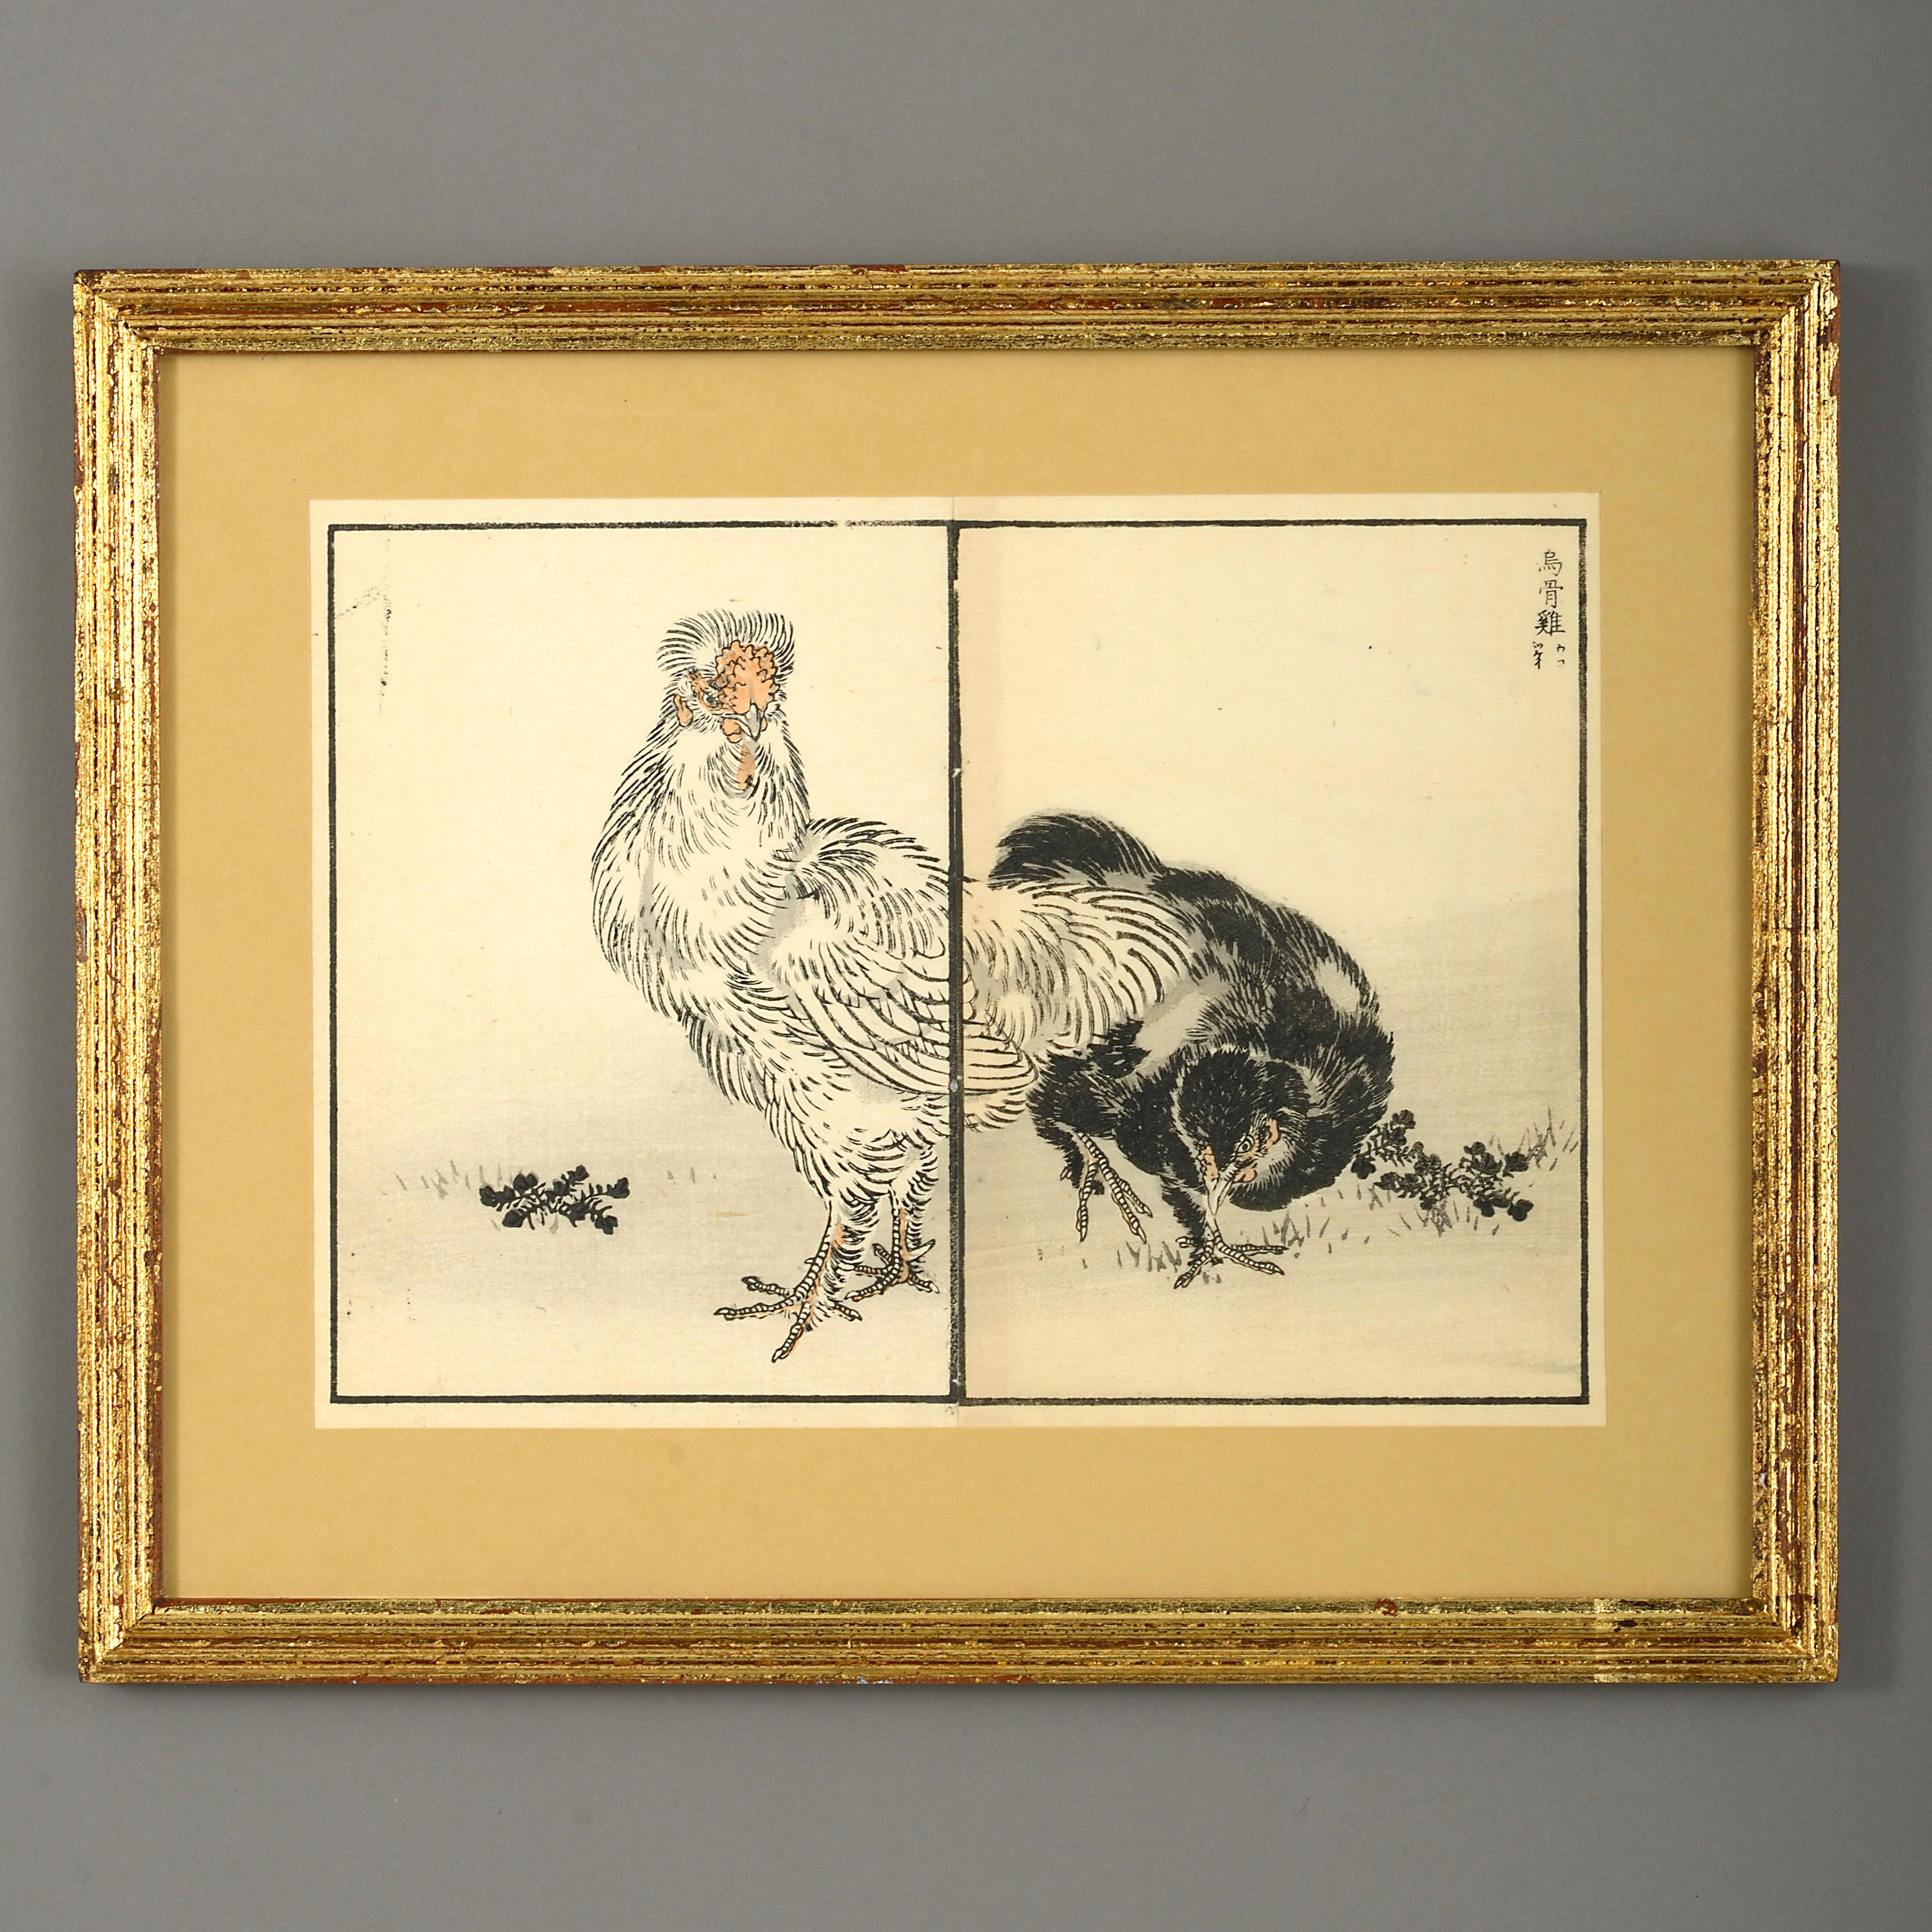 Neuf gravures sur bois d'oiseaux de la fin du XIXe siècle.

Période Meiji.

Présentés dans des cadres en bois doré avec des montures de lavage.

